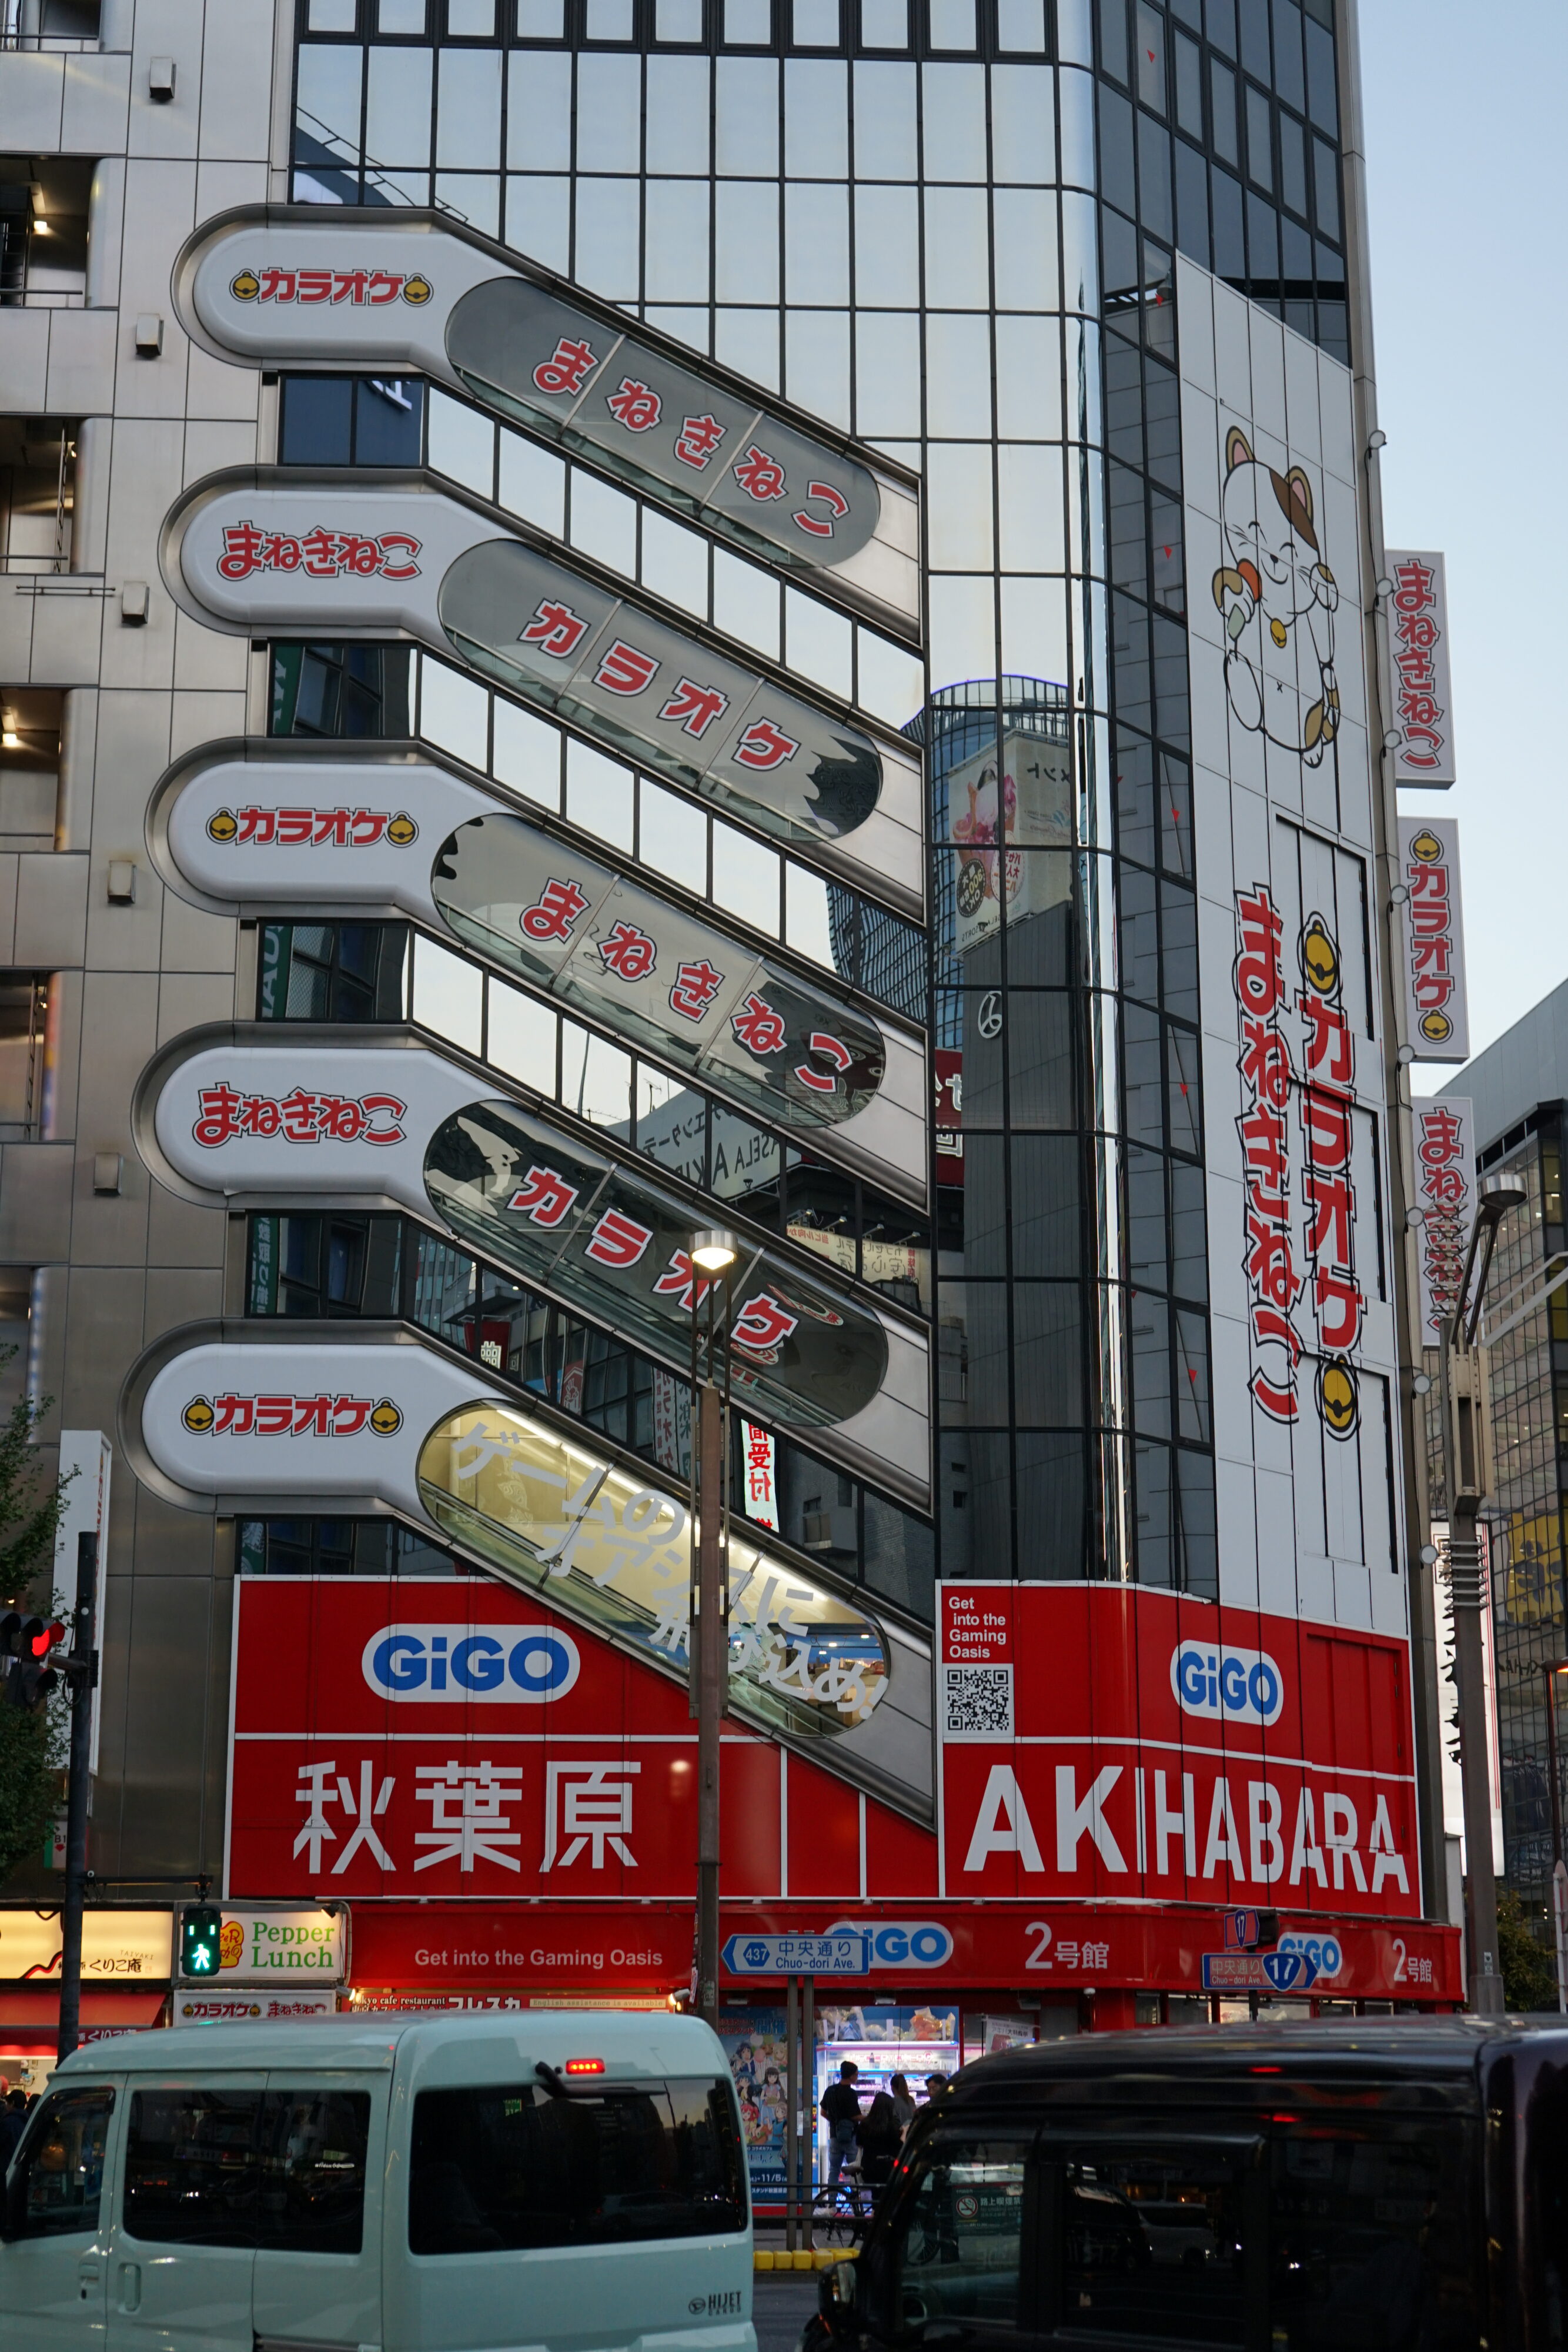 Verspiegeltes Hochhaus mit dem Schriftzug "Akihabara".